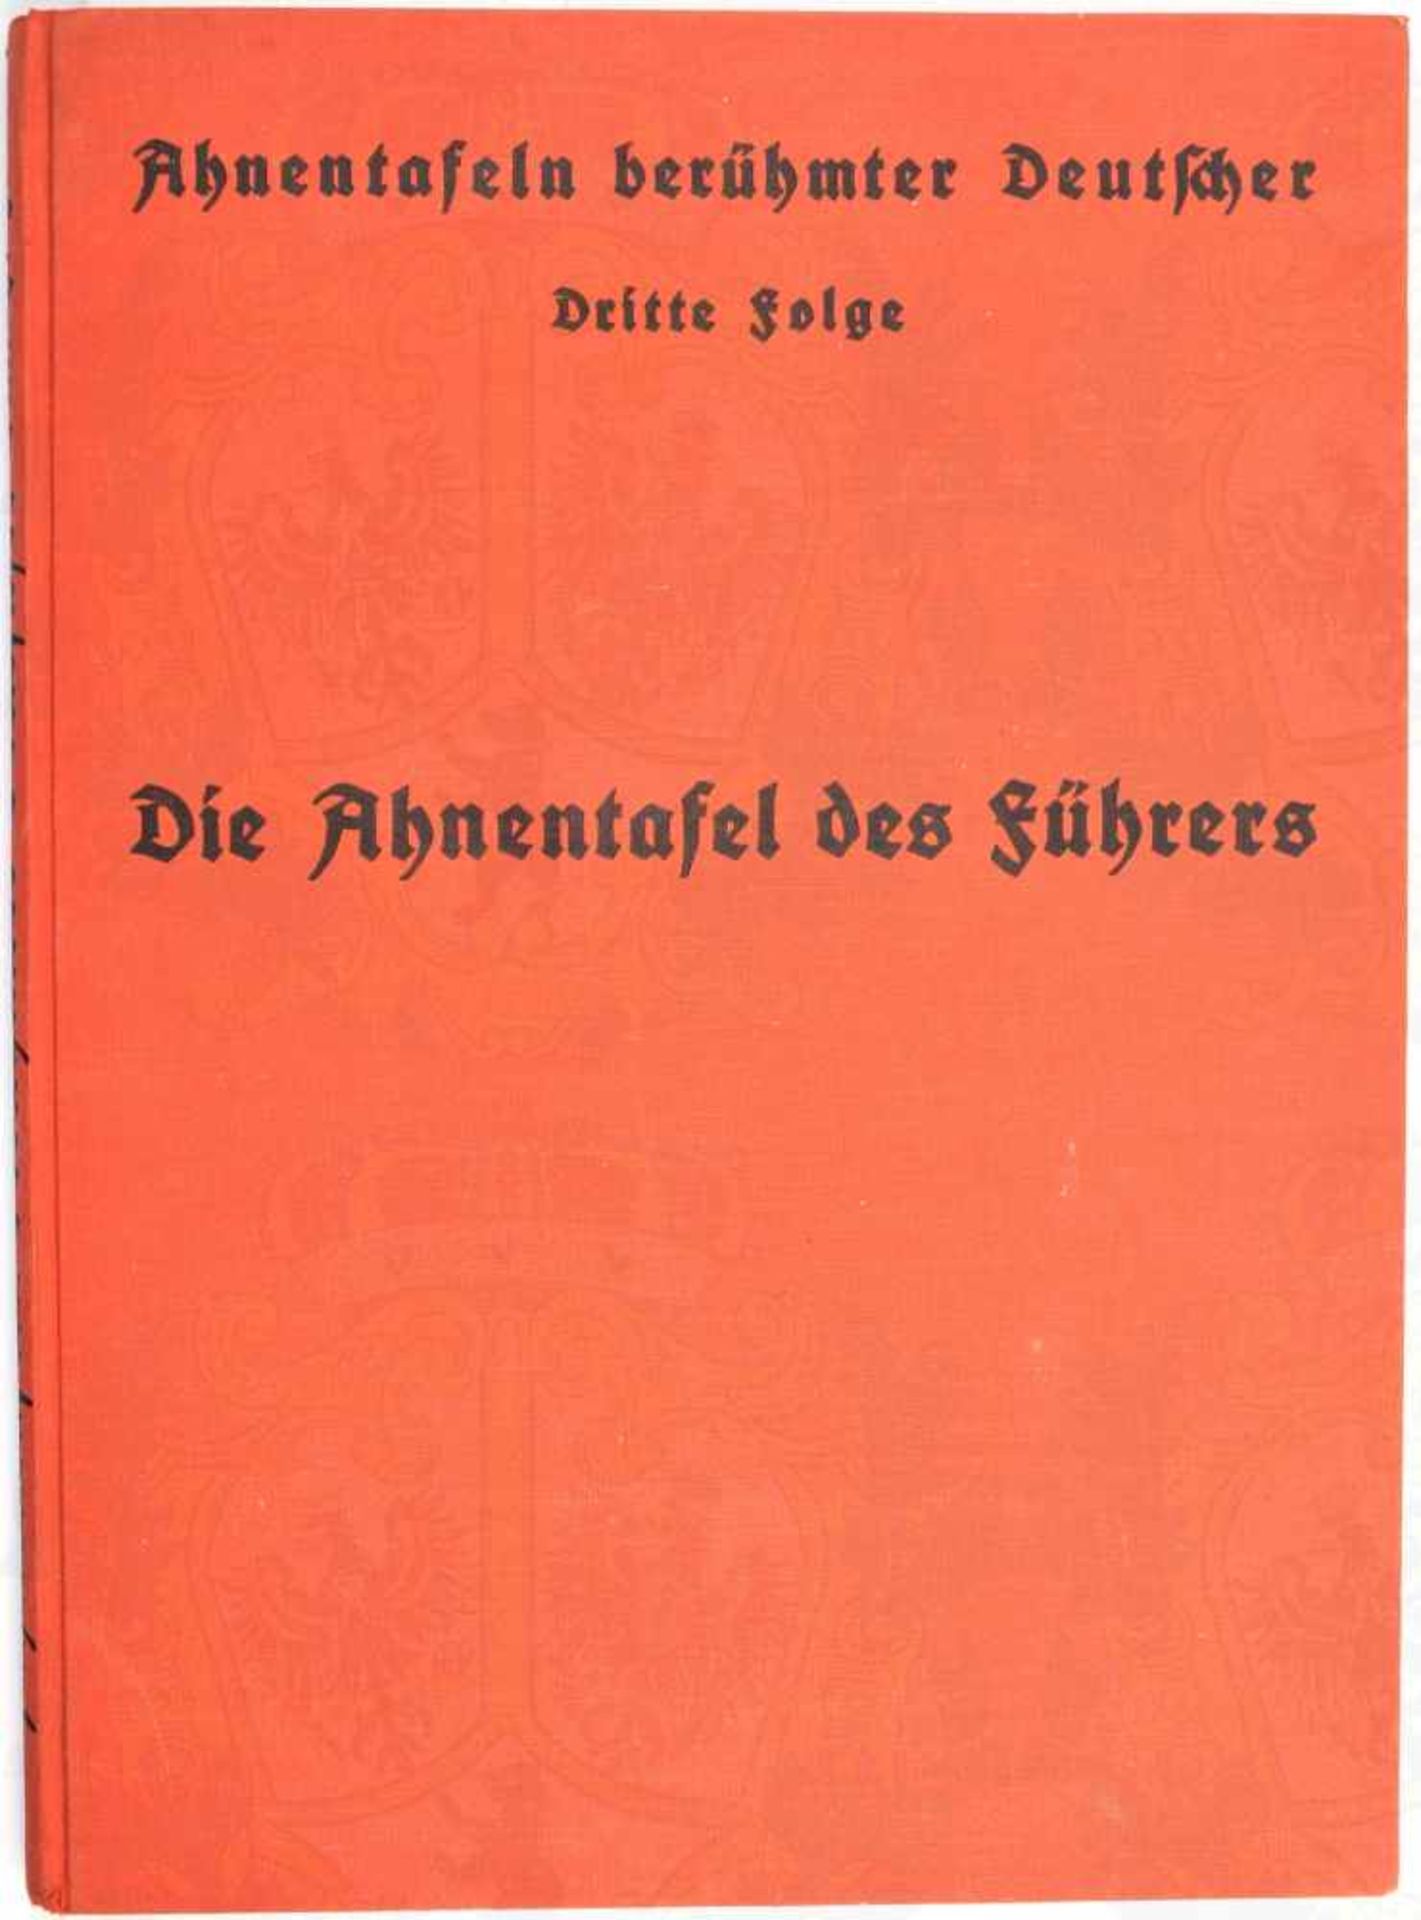 DIE AHNENTAFEL DES FÜHRERS, „Ahnentafeln berühmter Deutscher“, R. Kappensteiner, Leipzig 1937, Wohn-